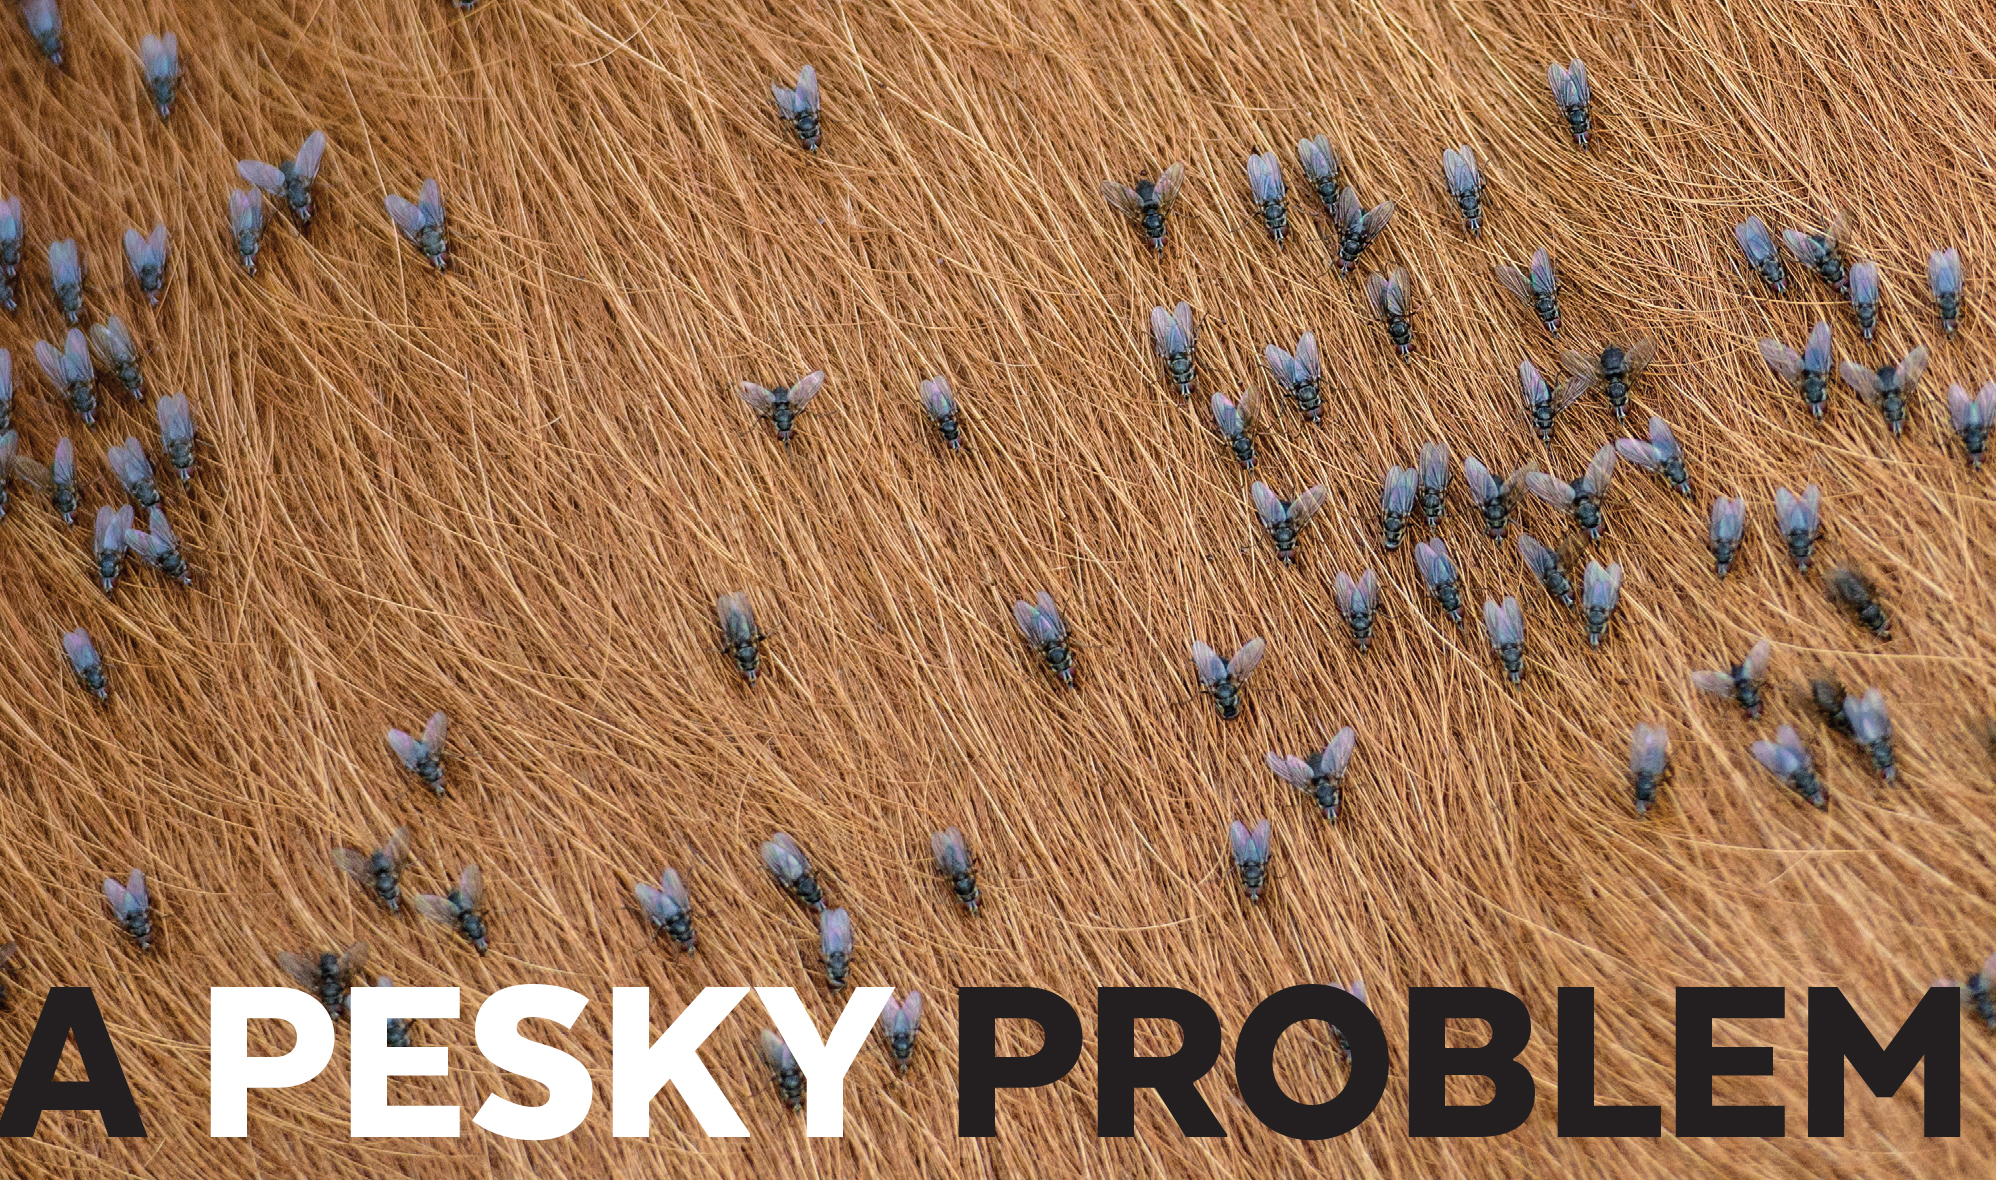 A Pesky Problem blog